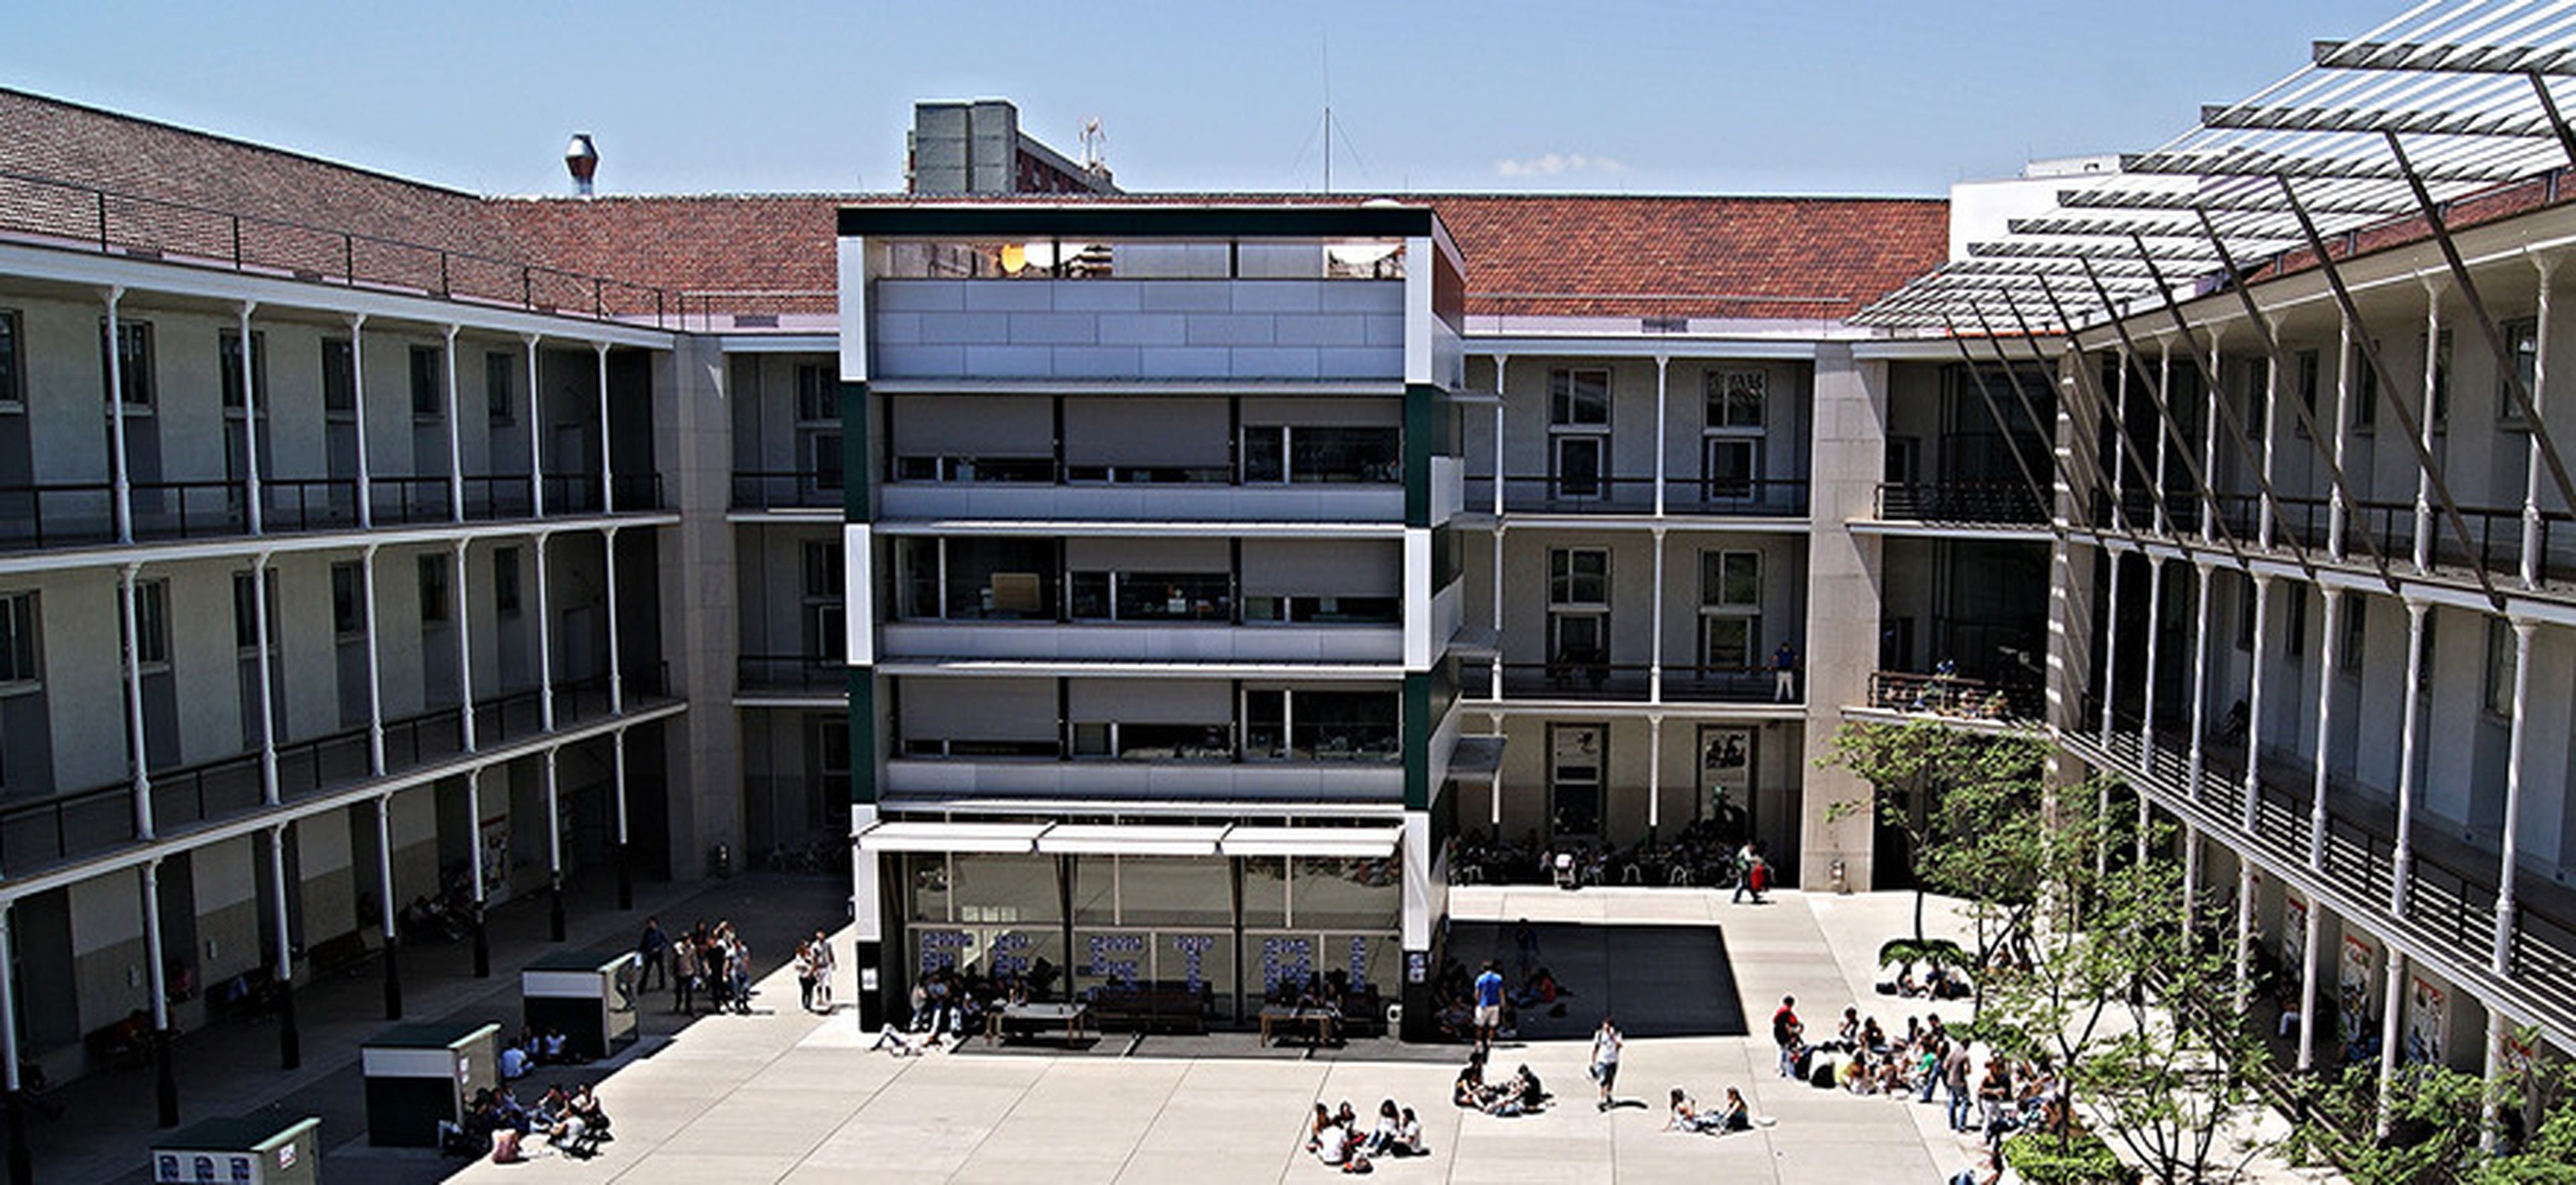 Universitat Pompeu Fabra. Campus de la Ciutadella (Barcelona).